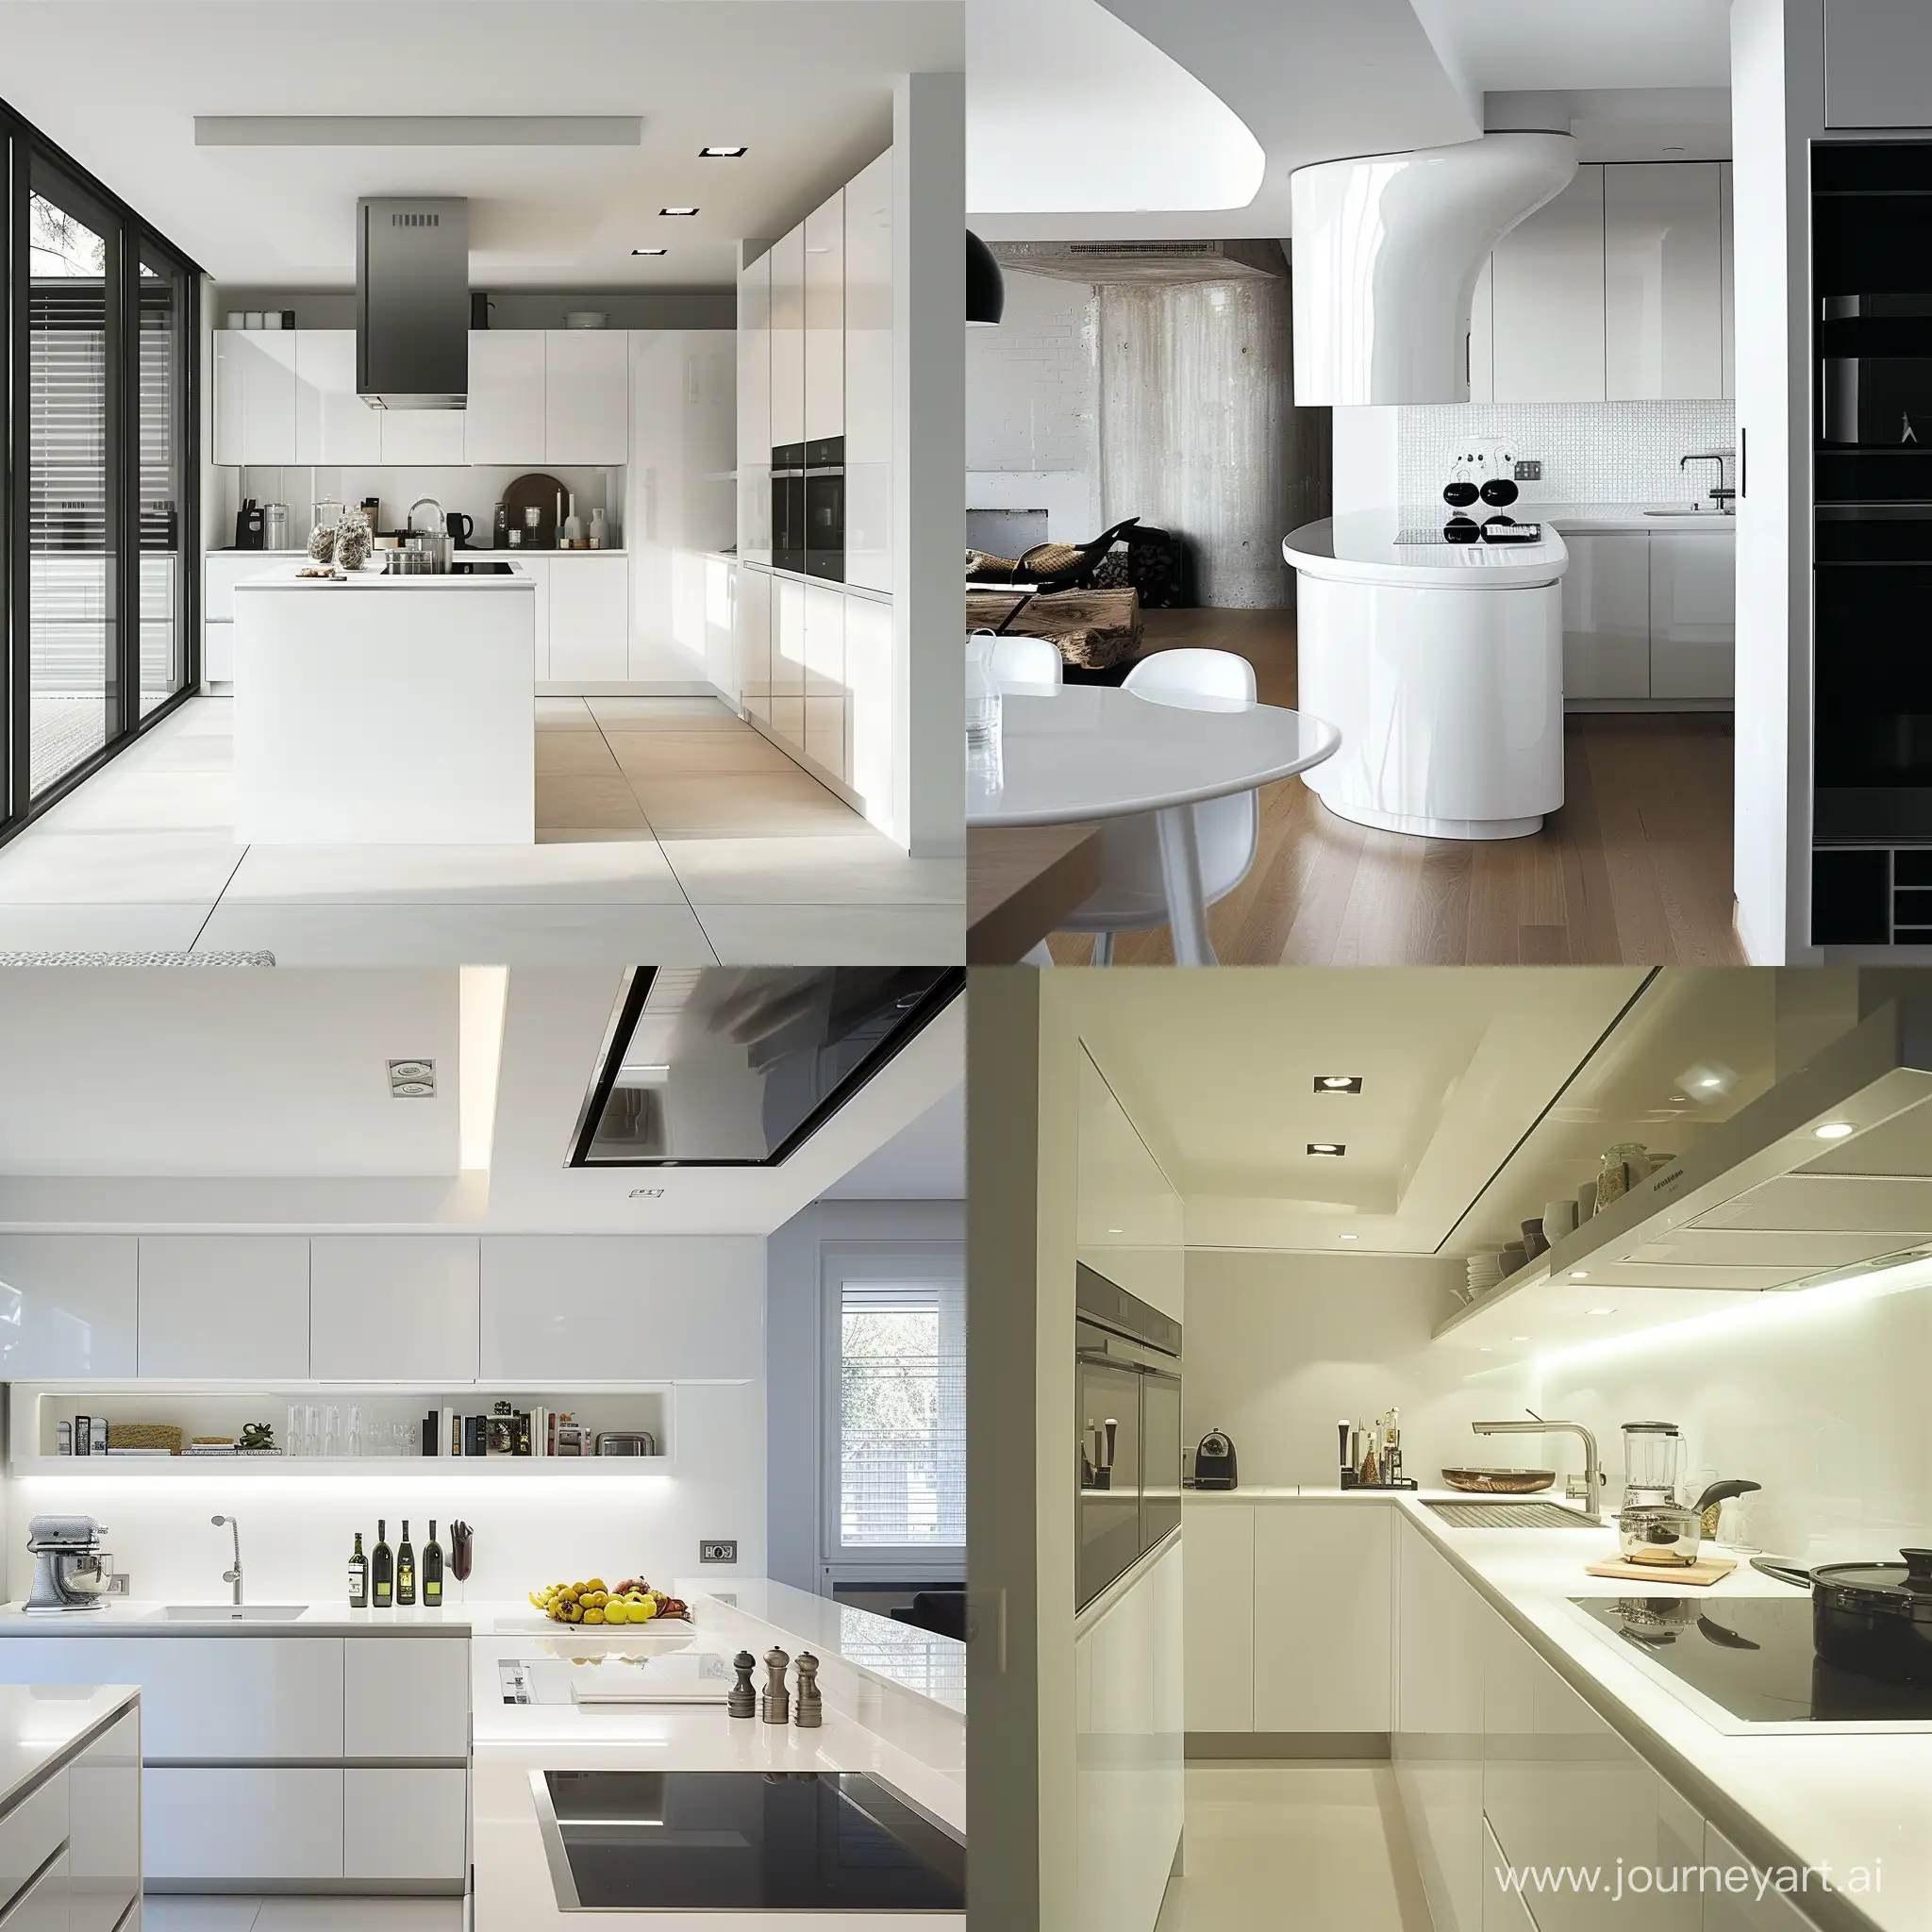 Modern-White-Kitchen-Interior-with-Sleek-Design